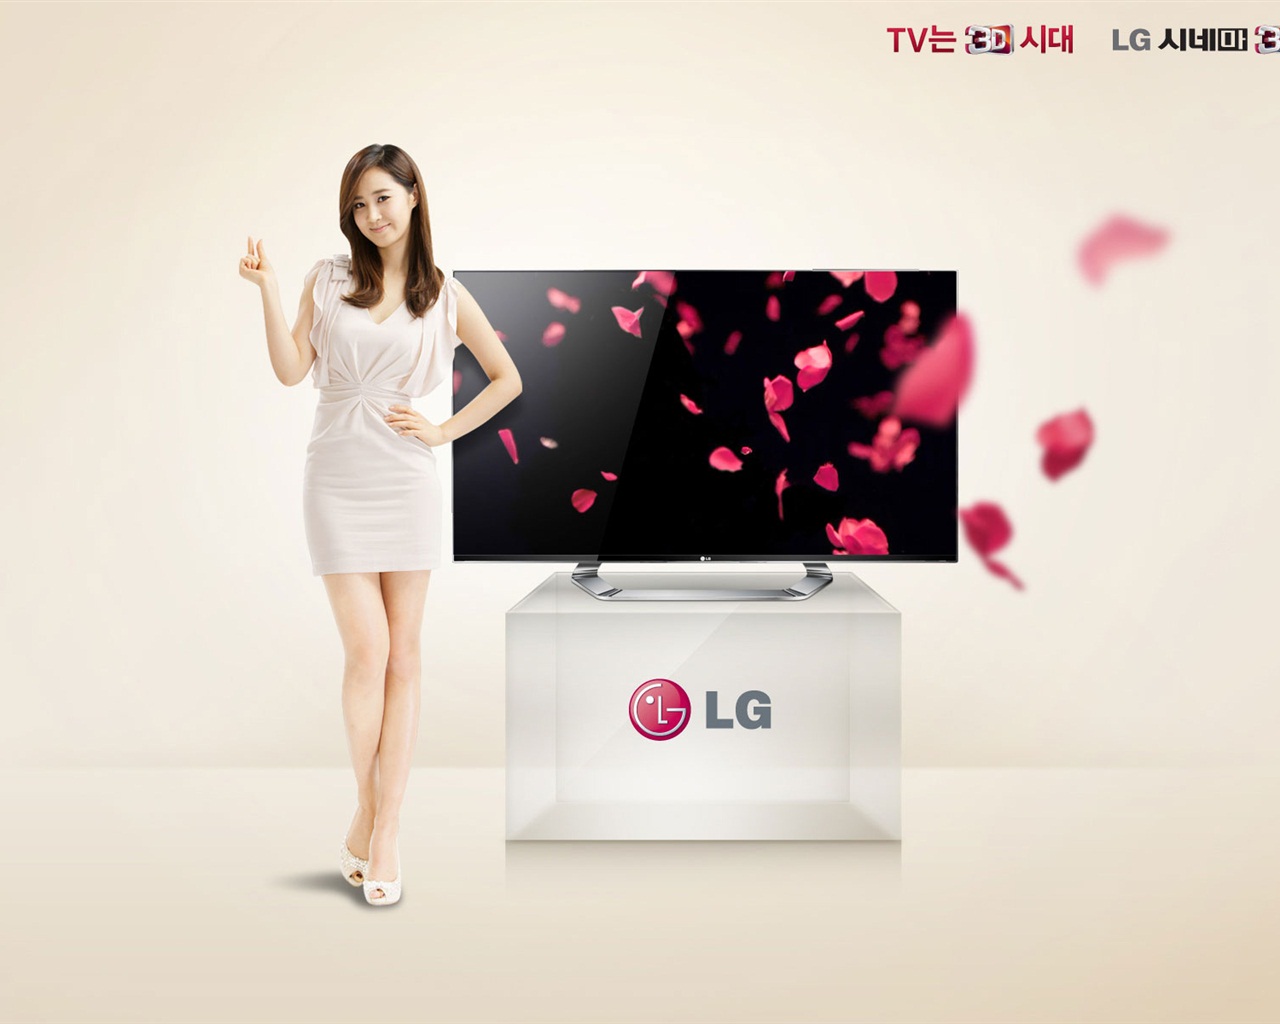 少女时代 ACE 和 LG 广告代言 高清壁纸17 - 1280x1024